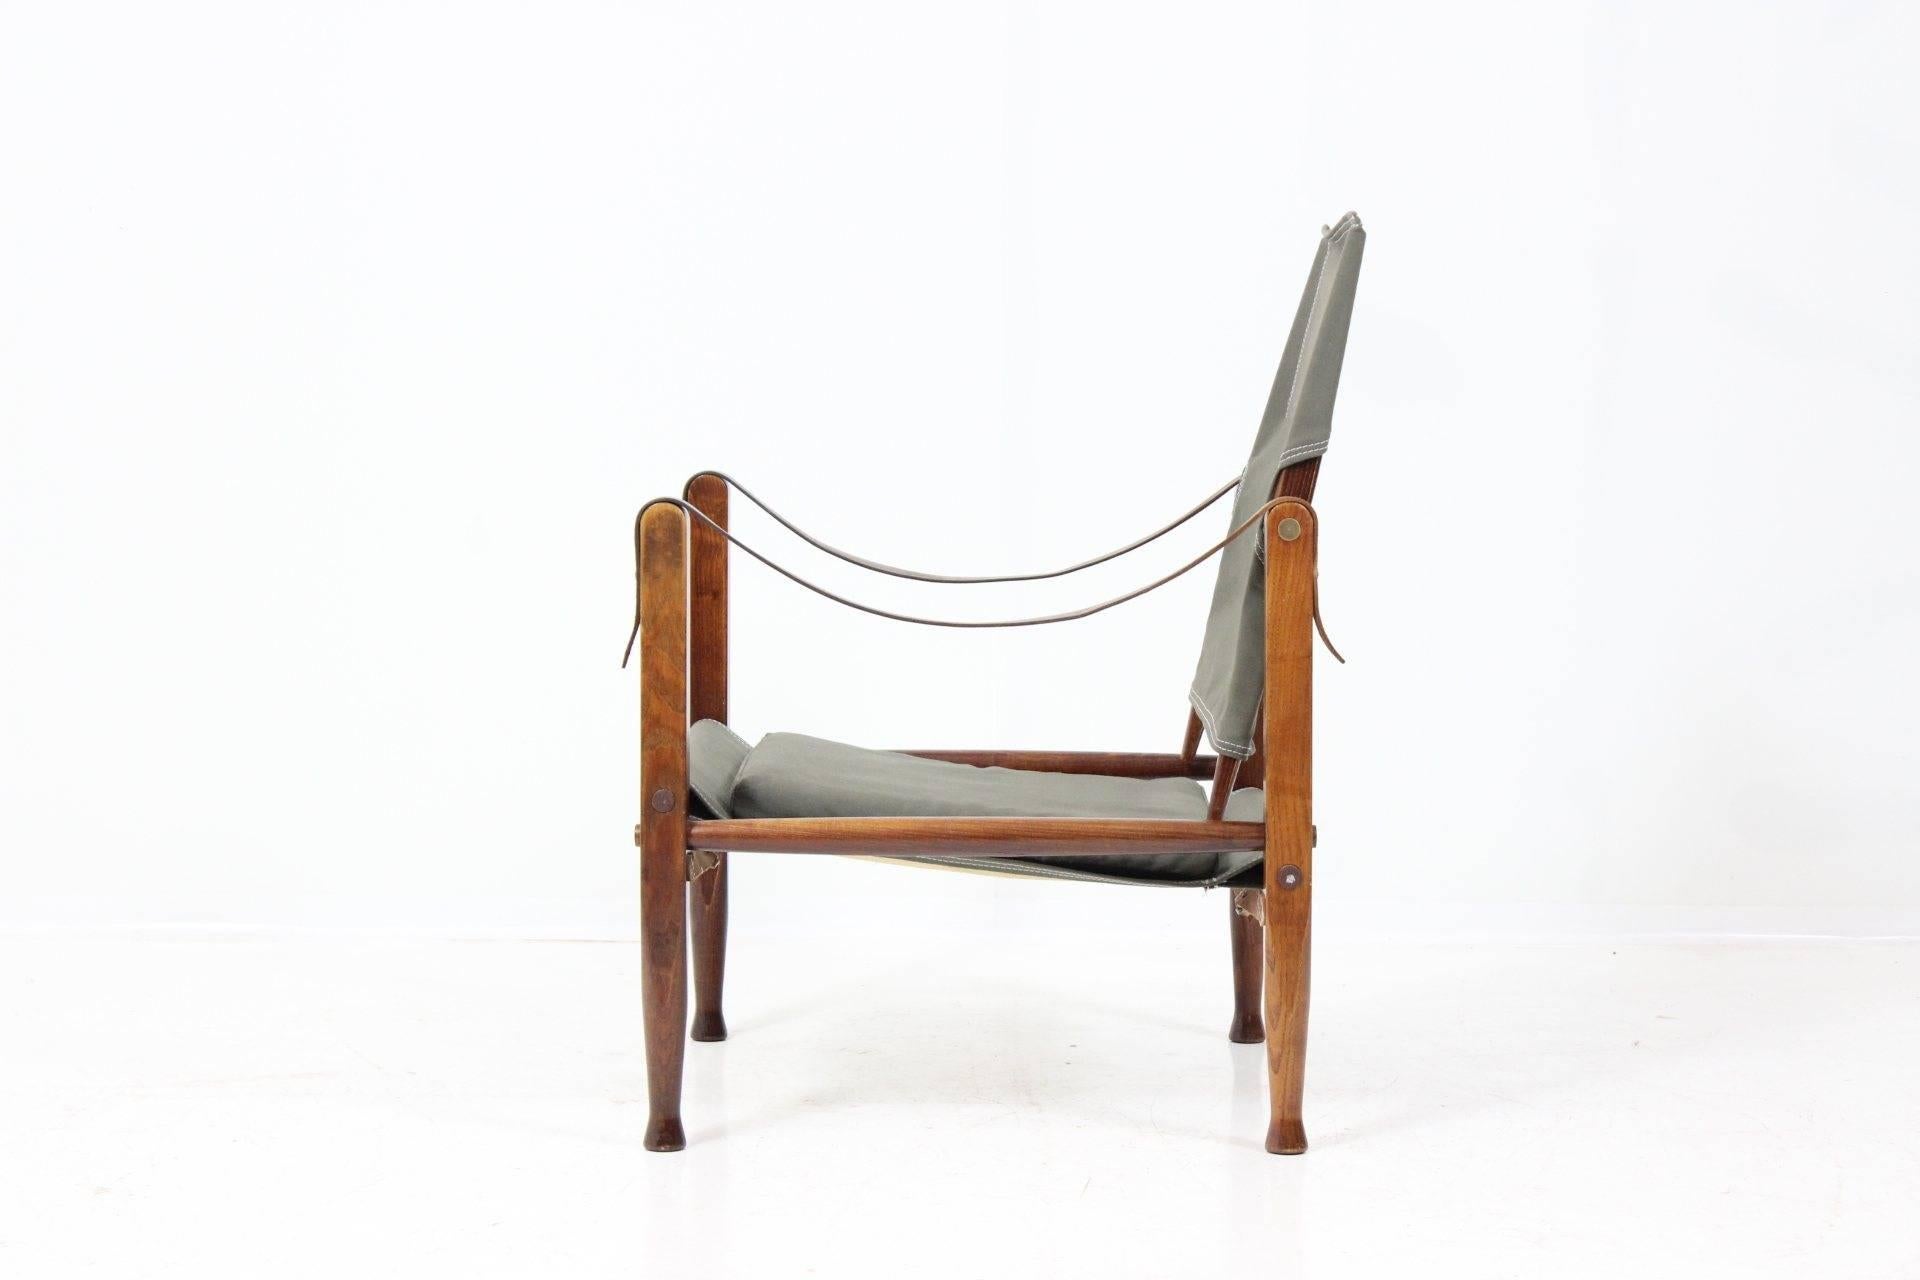 Scandinavian Modern Kaare Klint Safari Chair by Rud. Rasmussen, New Upholstery & Tibetian Lamb Cover